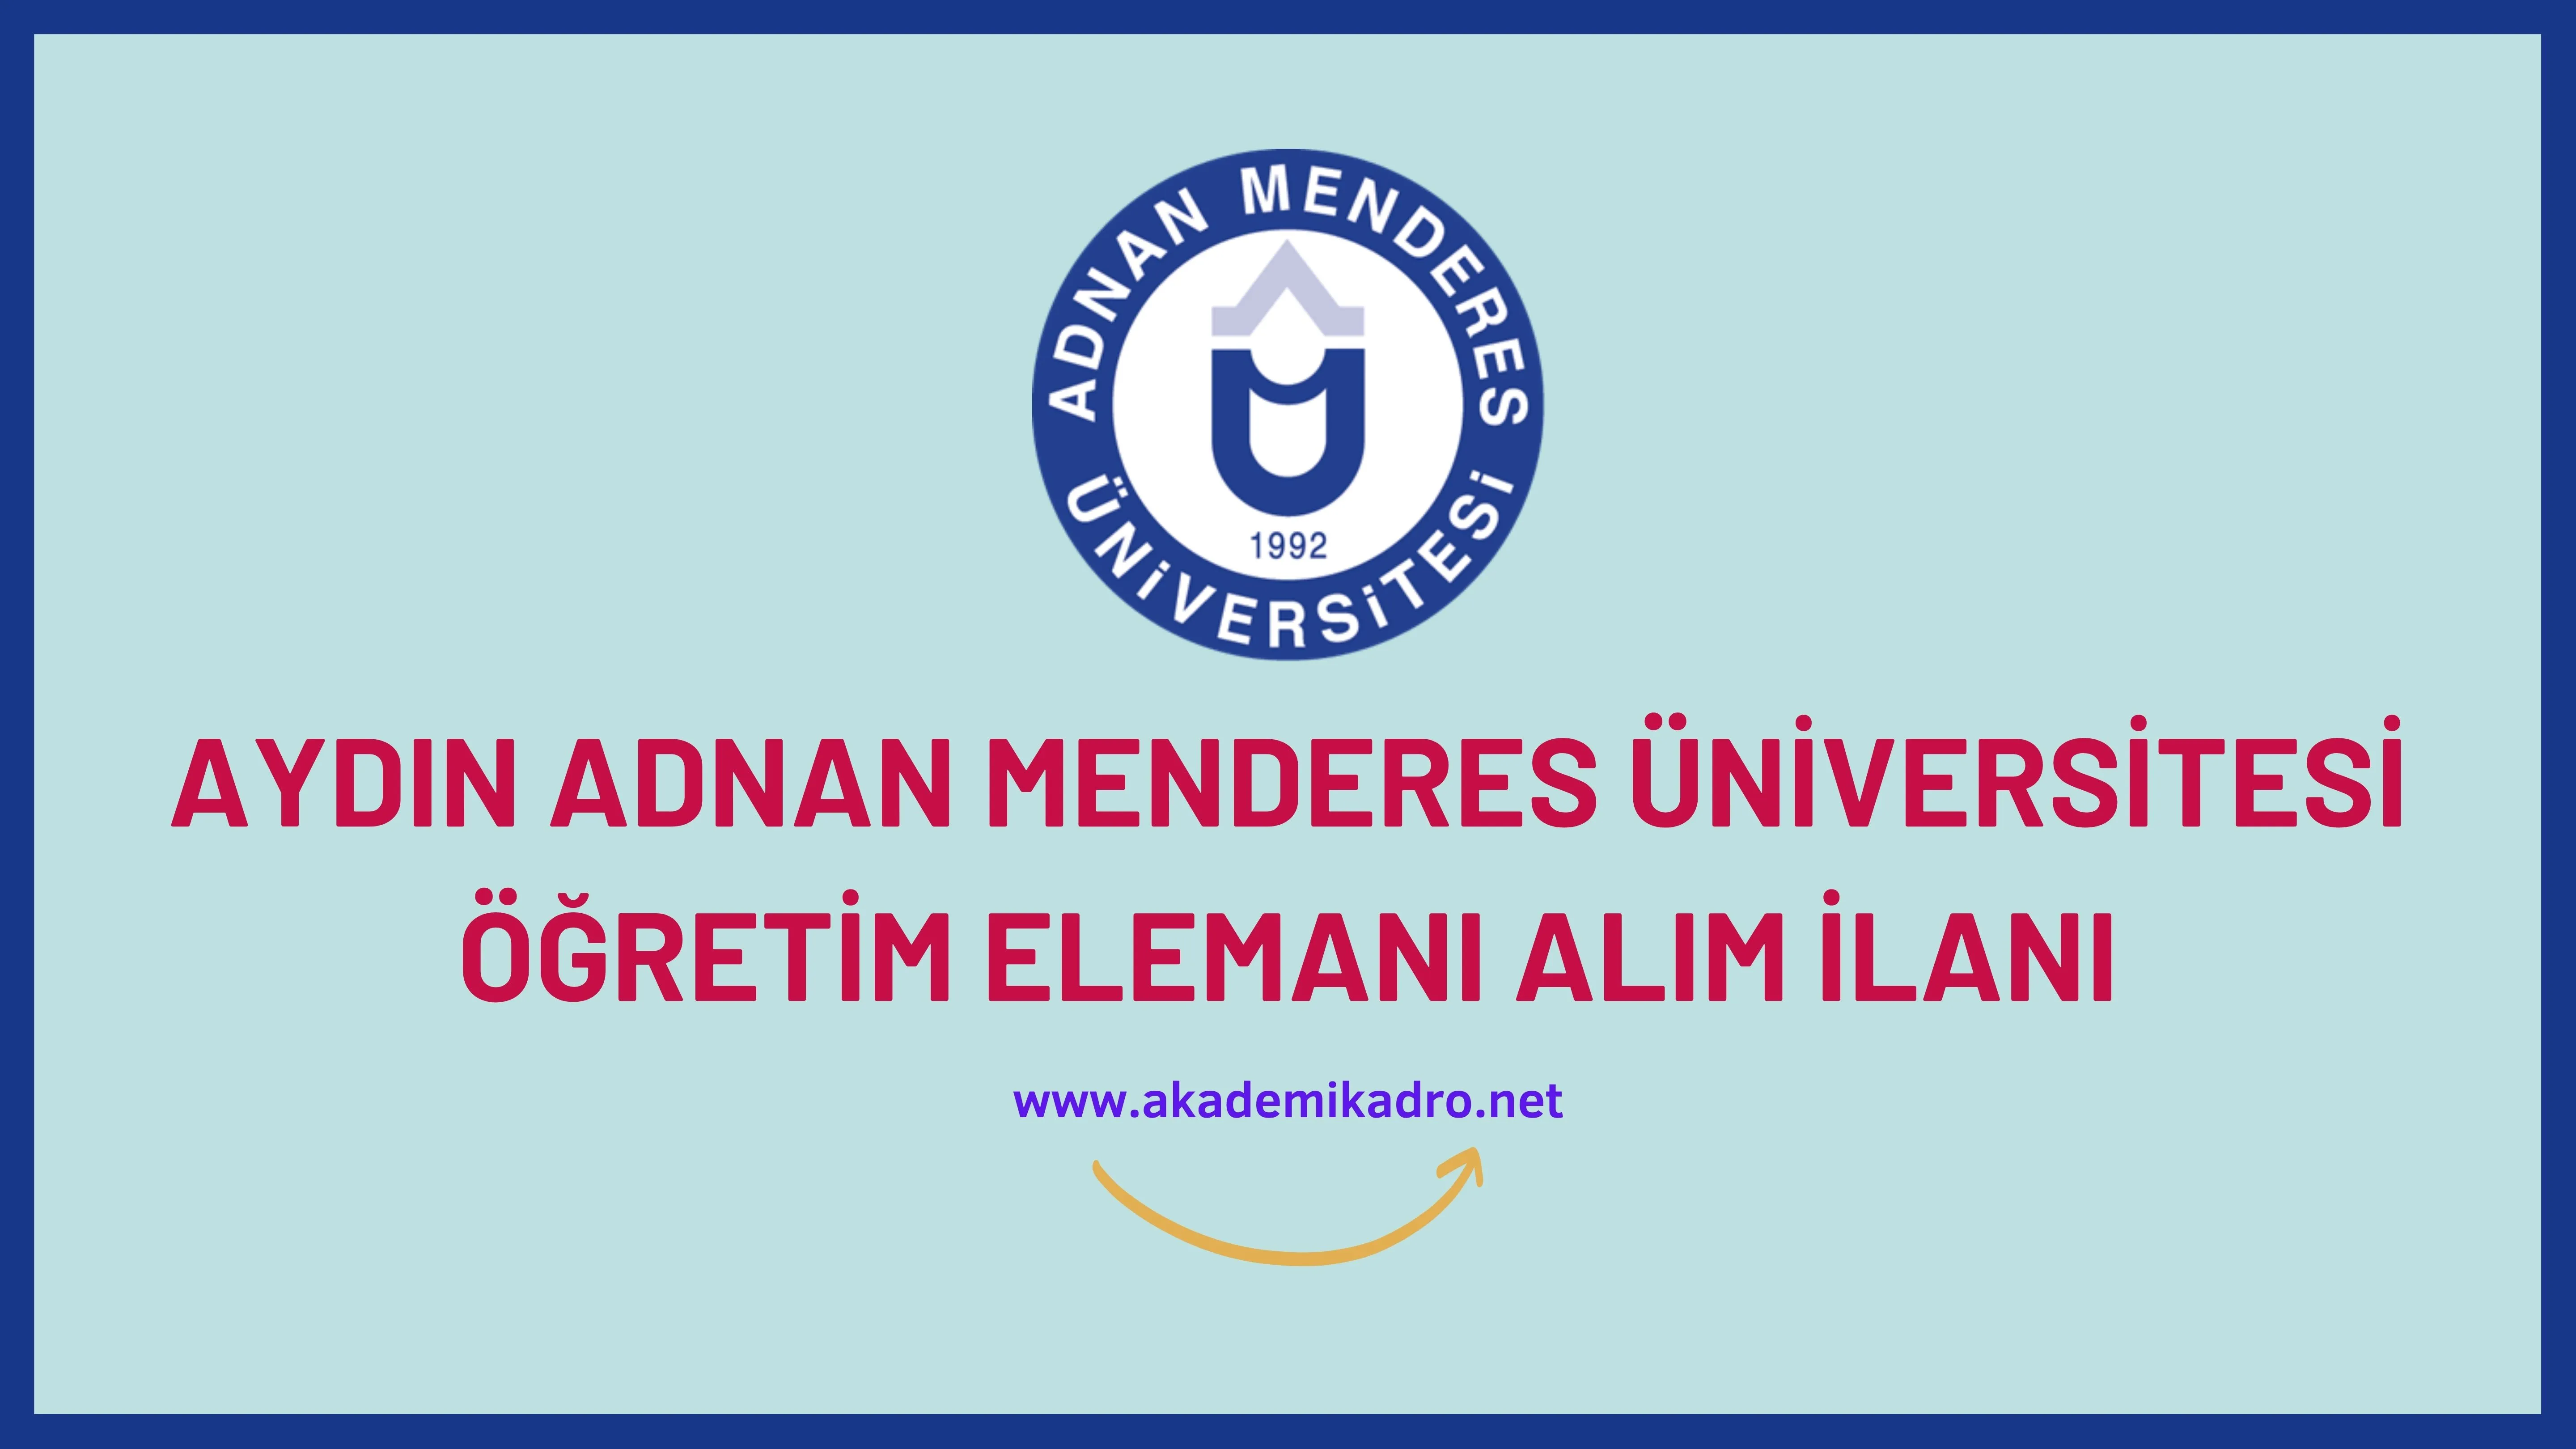 Aydın Adnan Menderes Üniversitesi 74 öğretim üyesi ve 16 Öğretim görevlisi alacaktır. Son başvuru tarihi 14 Aralık 2022